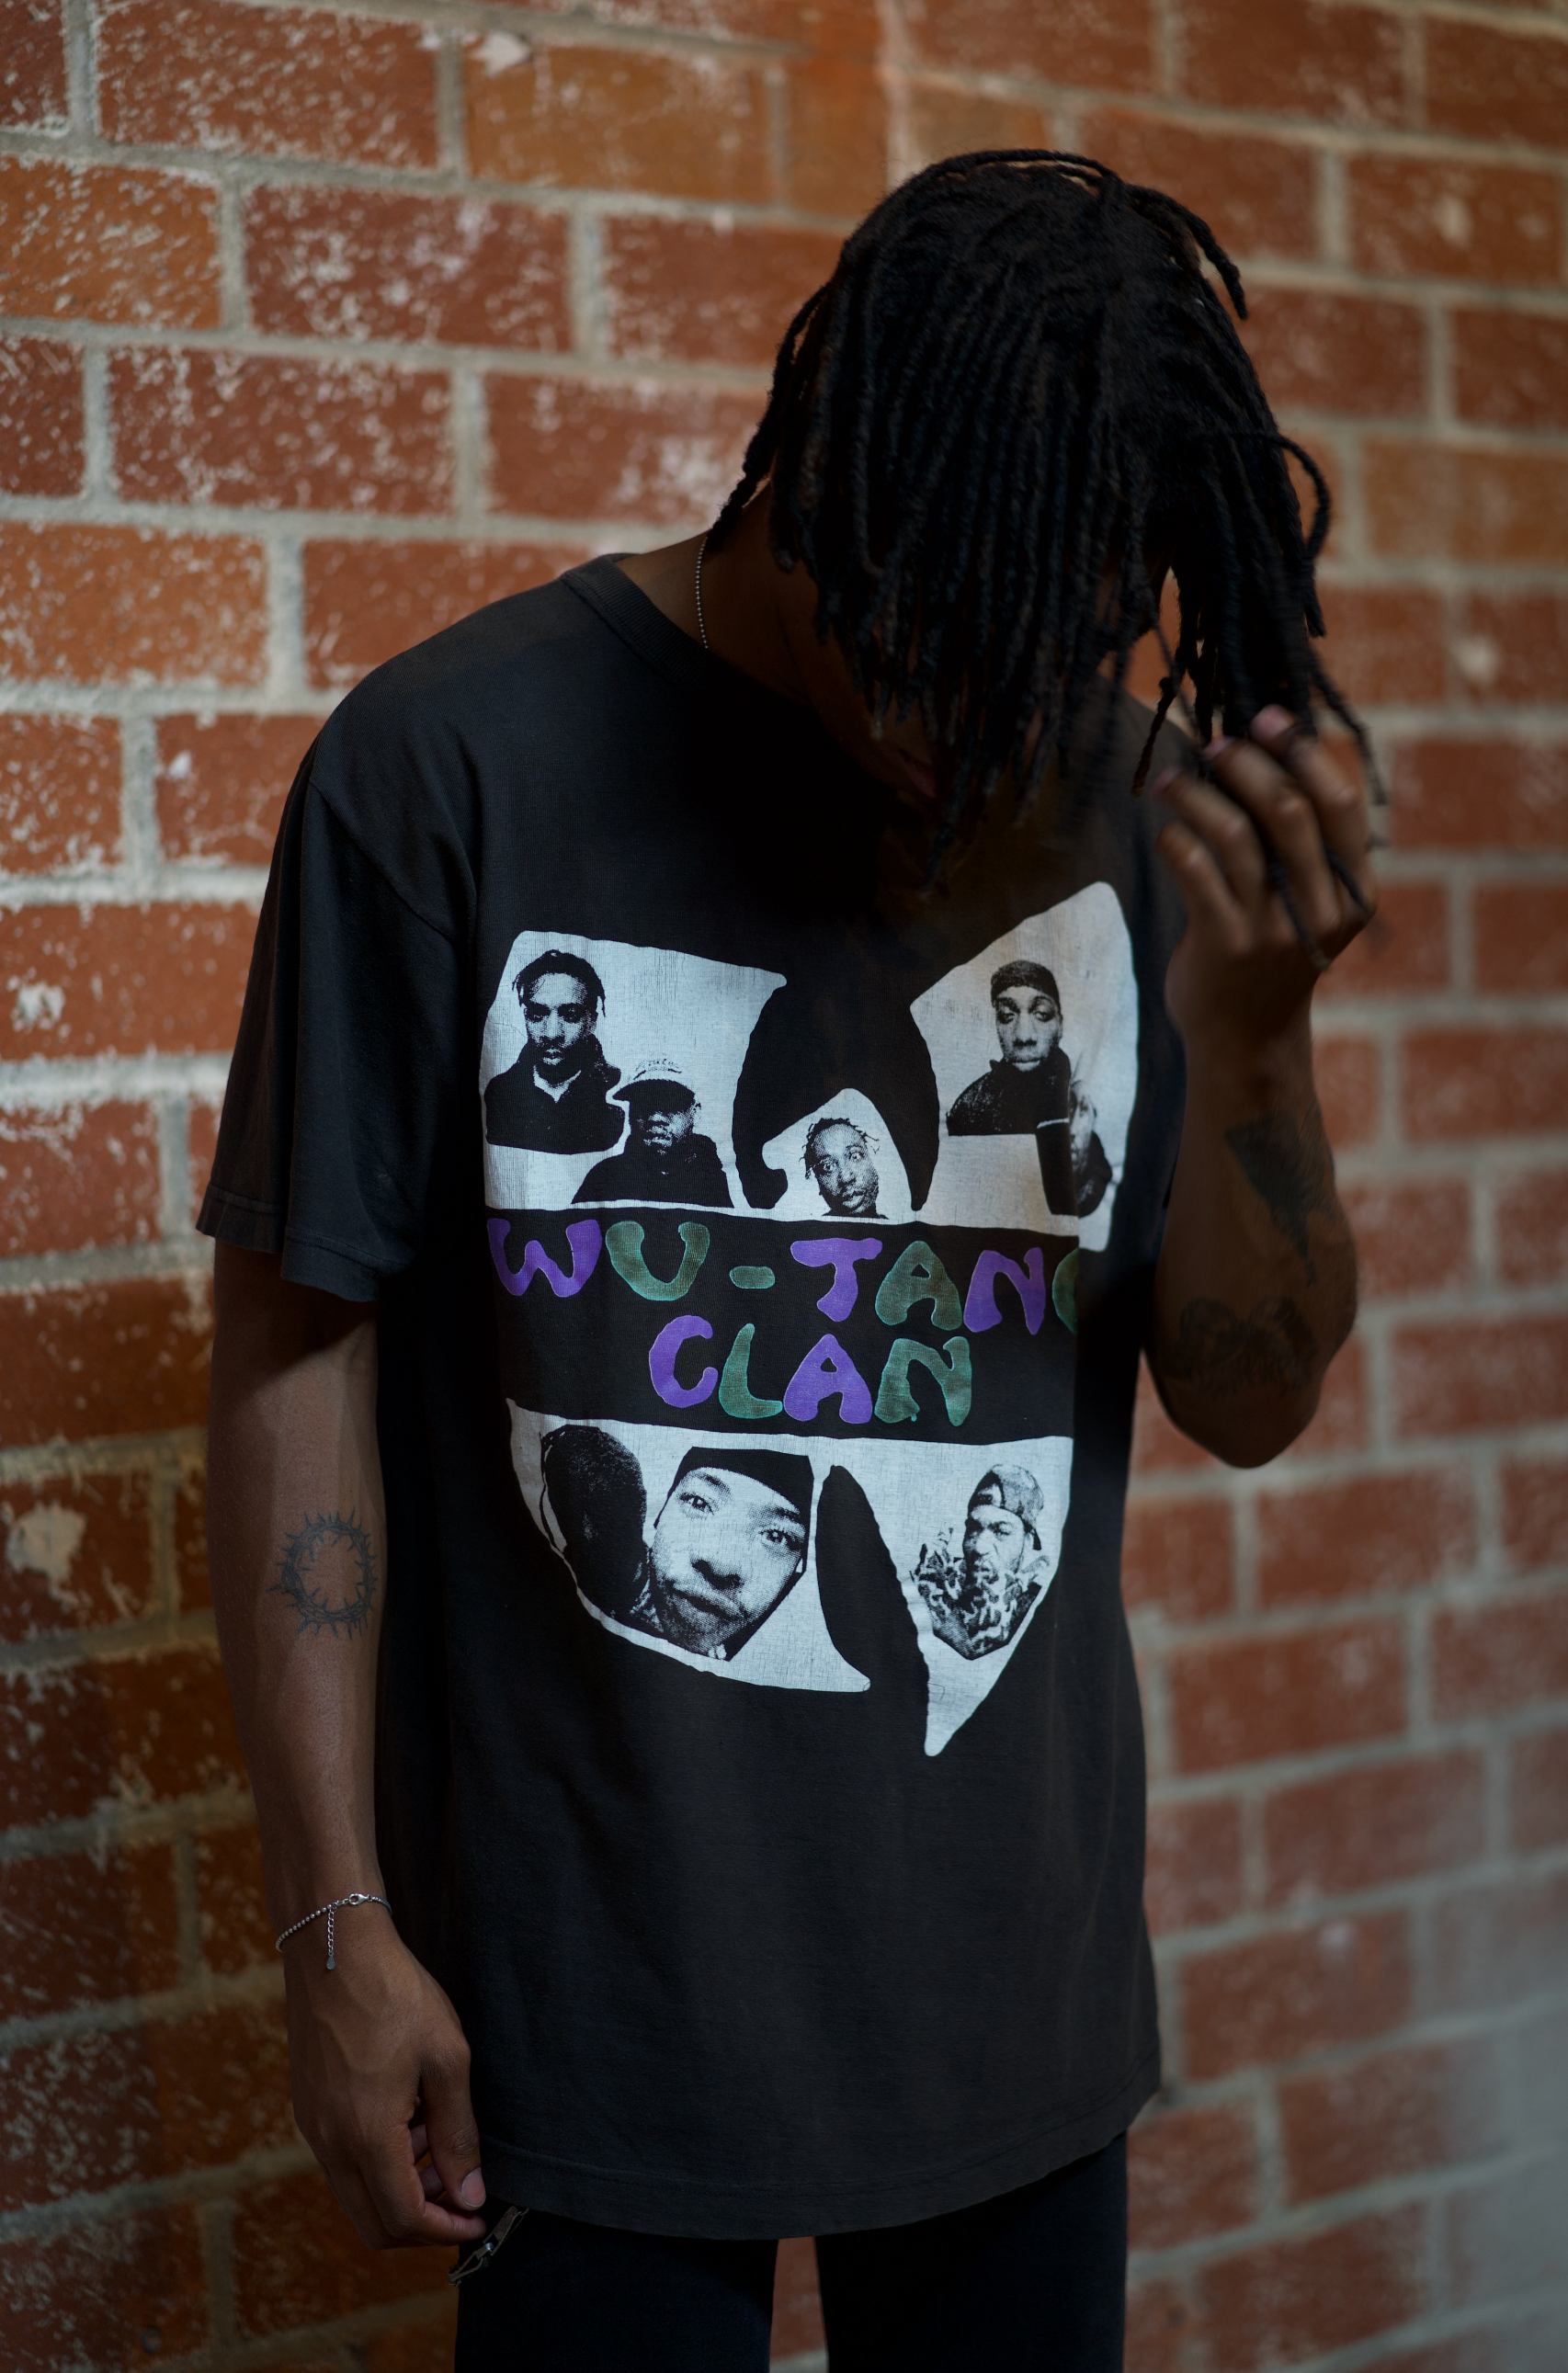 Wu-Tang Clan 'CREAM' Graphic T-Shirt